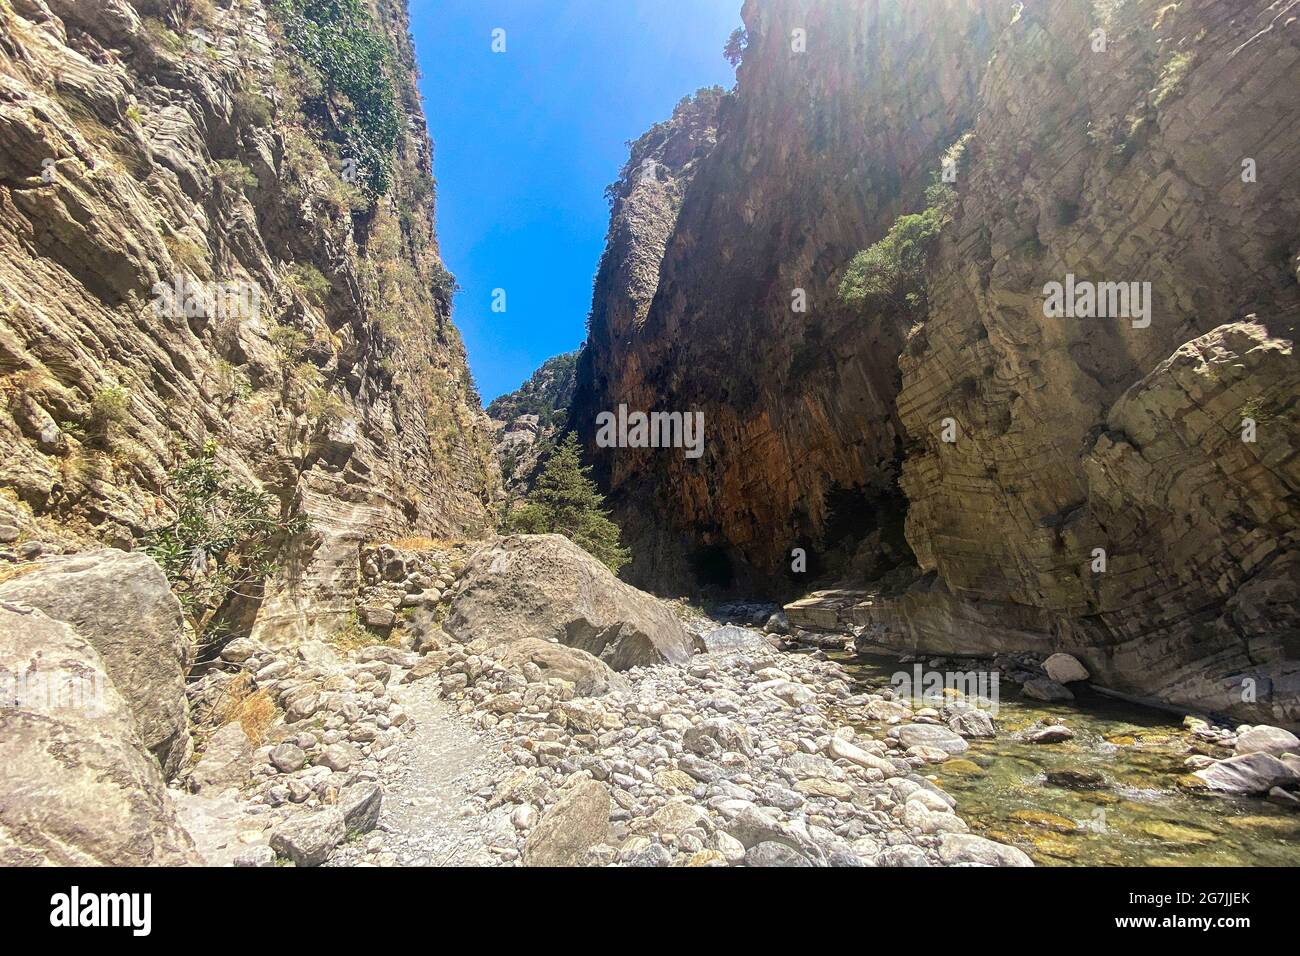 La gorge de Samaria sur l'île grecque de Crète Banque D'Images